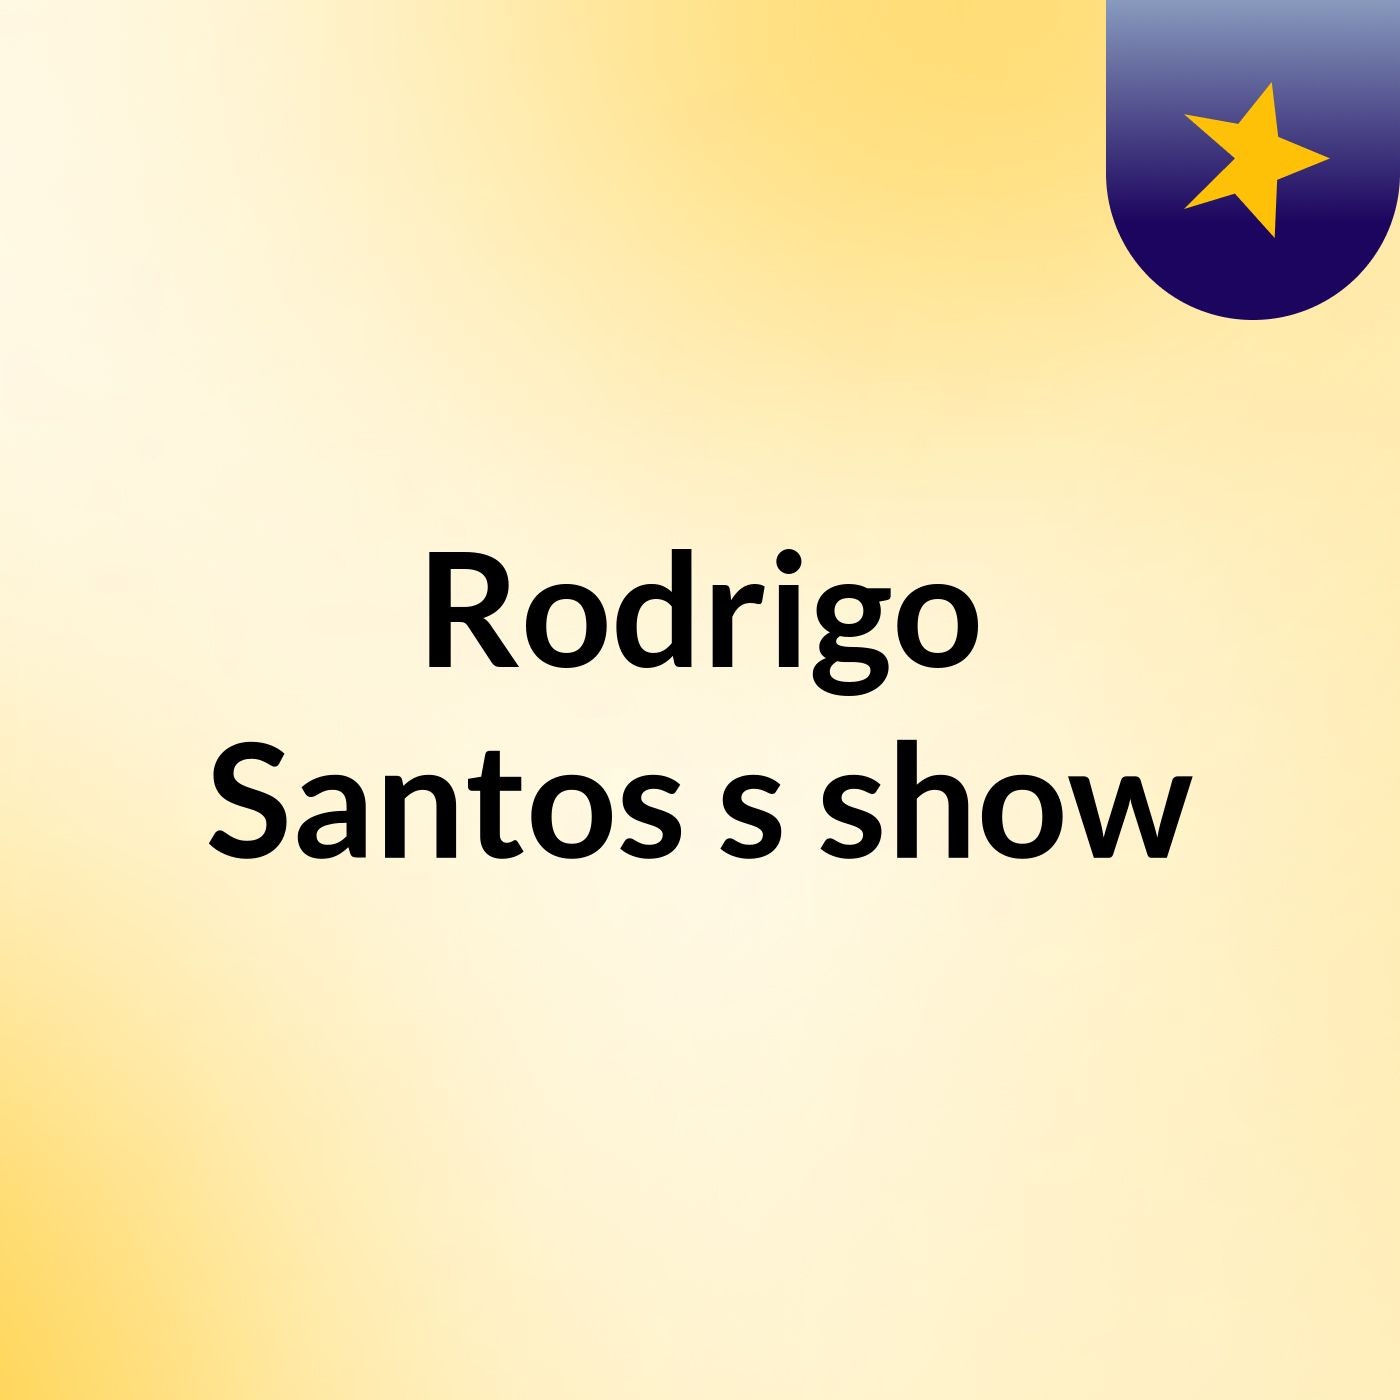 Rodrigo Santos's show